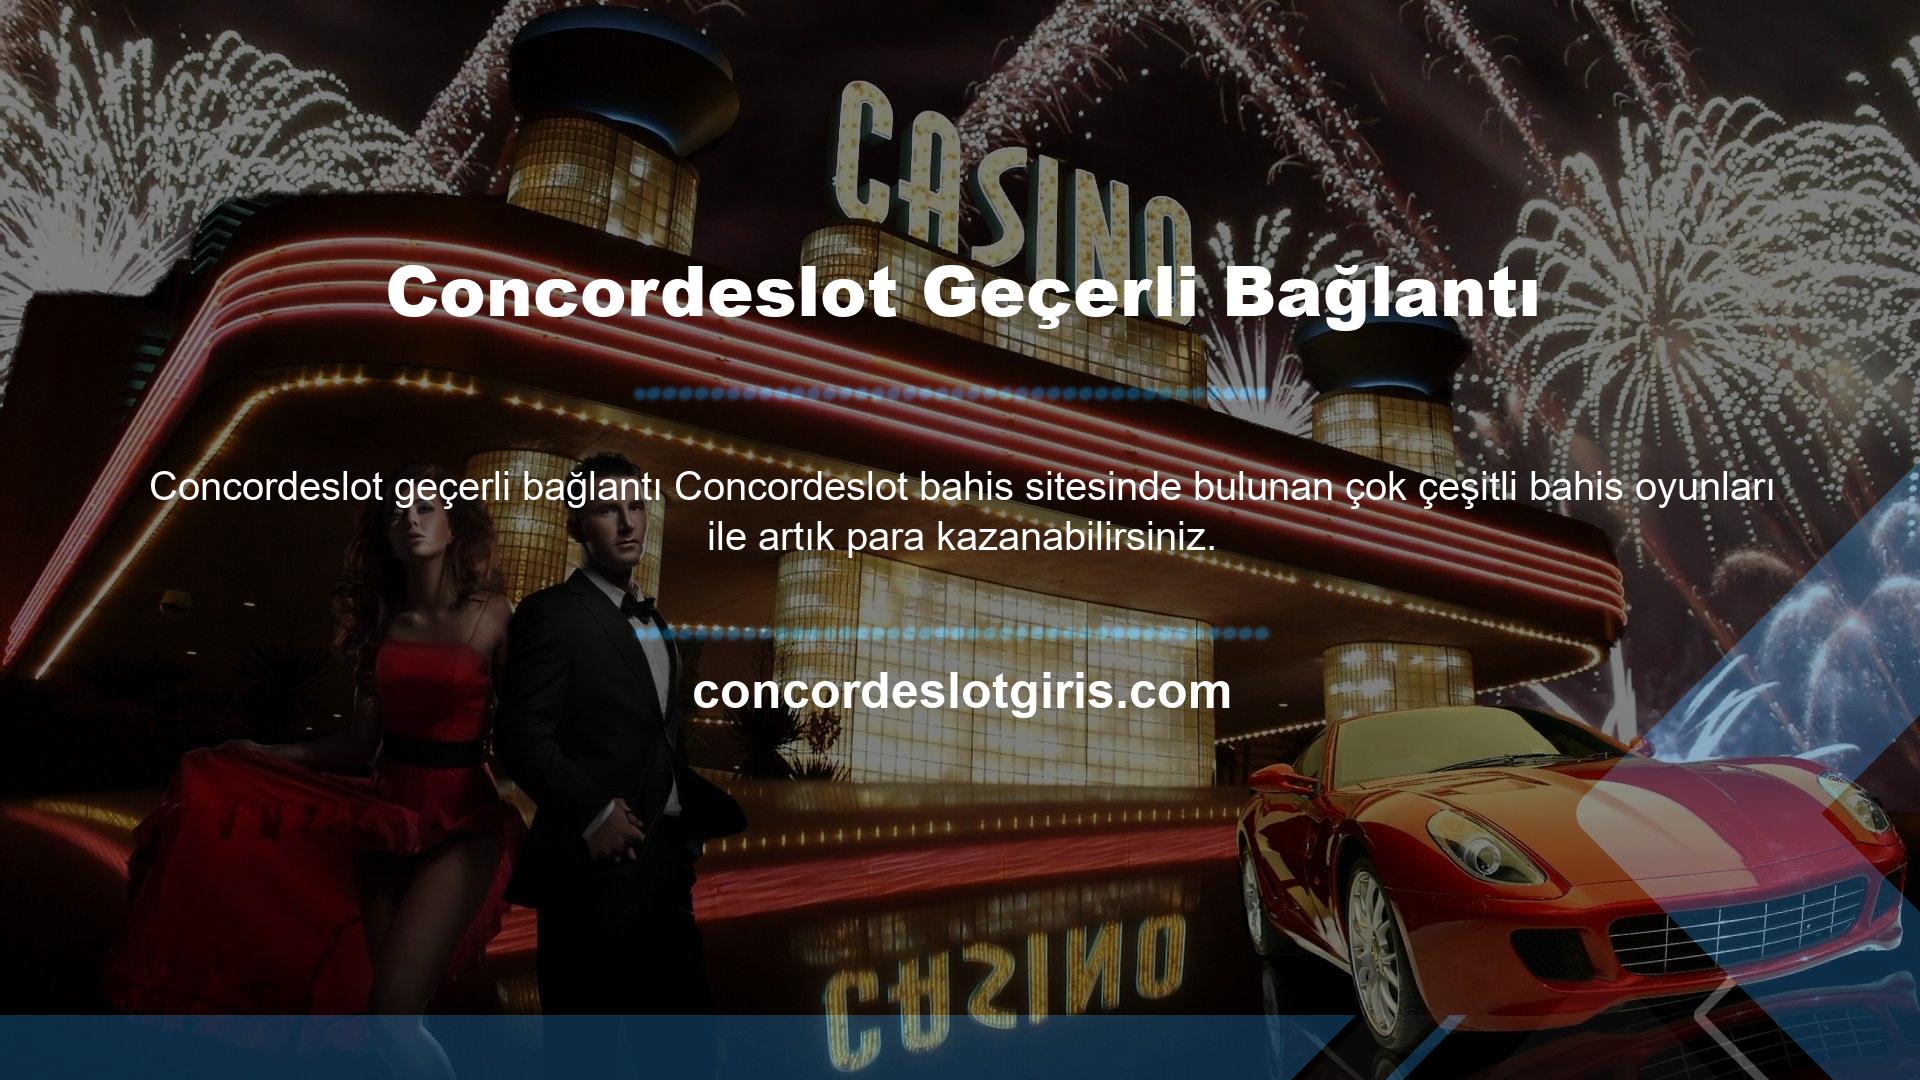 Concordeslot sitesi ayrıca canlı spor bahislerinden canlı casino oyunlarına kadar bol bol aksiyon sunmaktadır